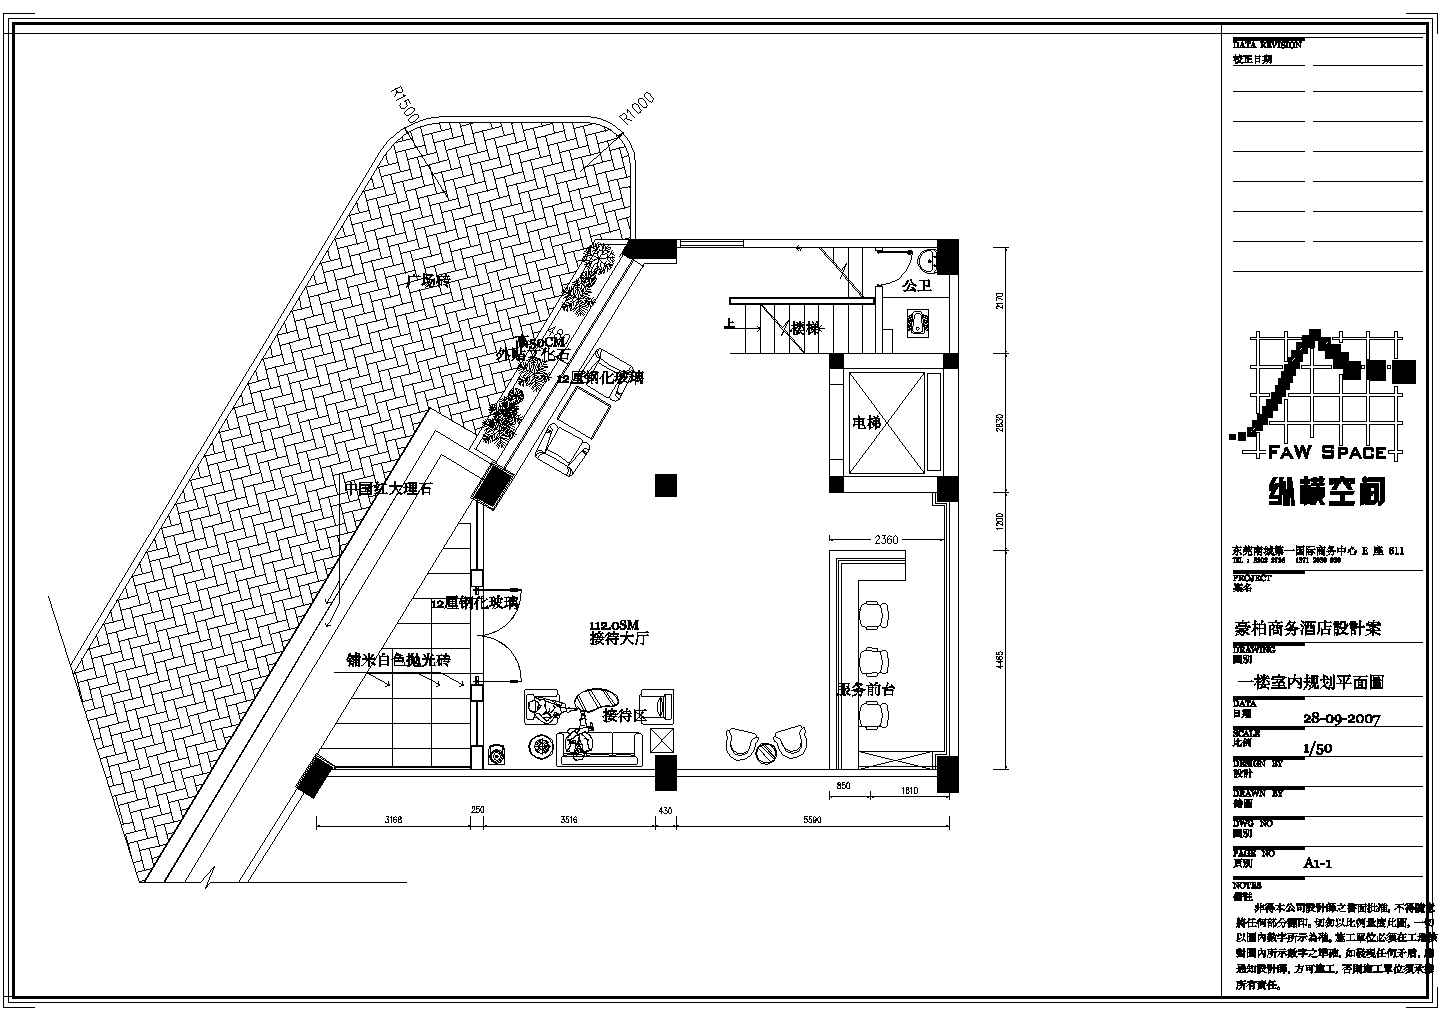 广东东莞商务酒店六层梯形布局装修装饰设计cad施工平面布置图纸